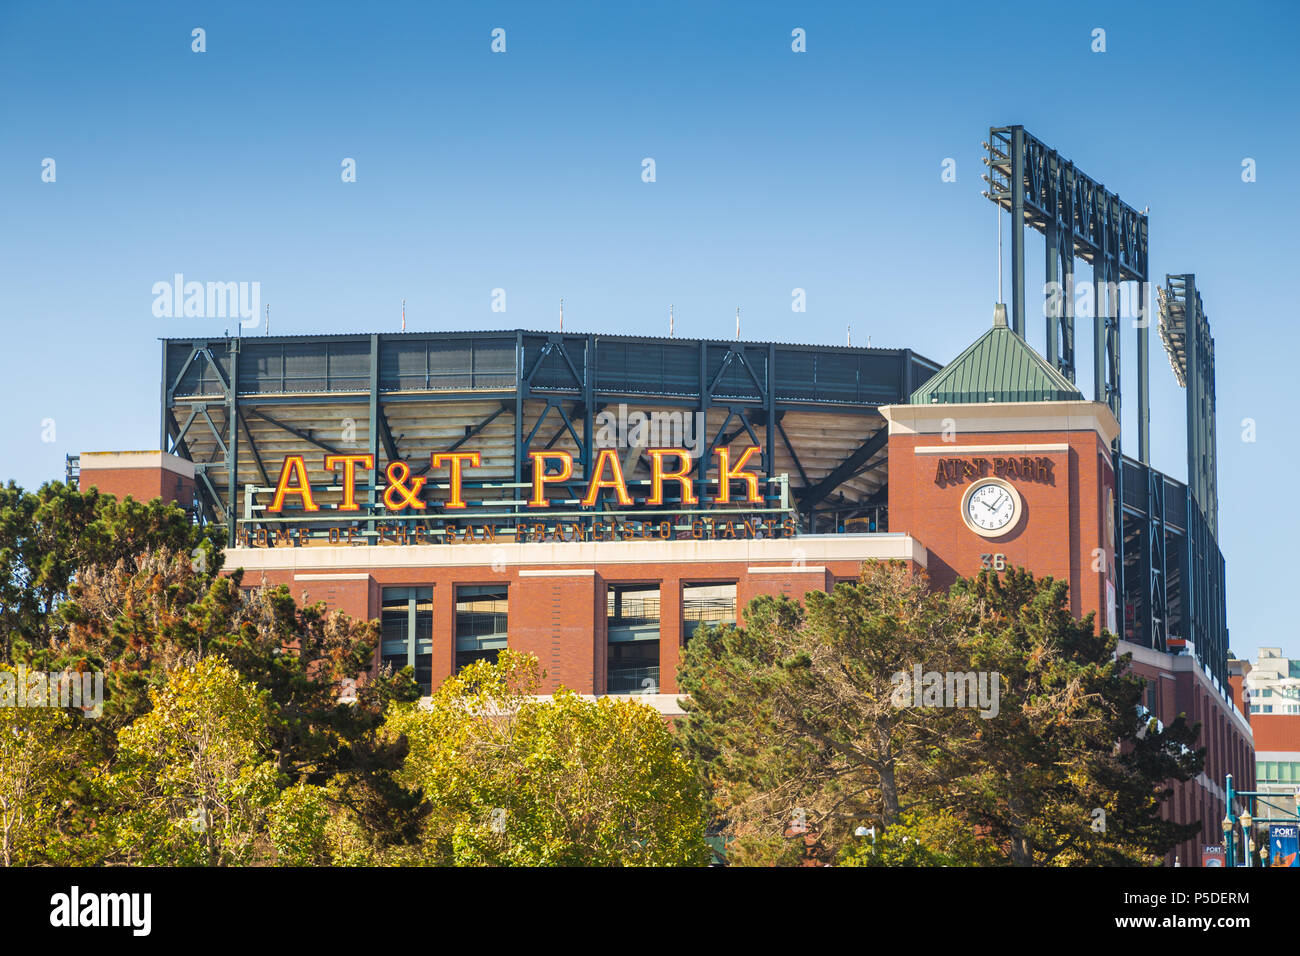 Centro storico di AT&T Park baseball park, sede dei San Francisco Giants professional Baseball in franchising, in una bella giornata di sole con cielo blu, California Foto Stock